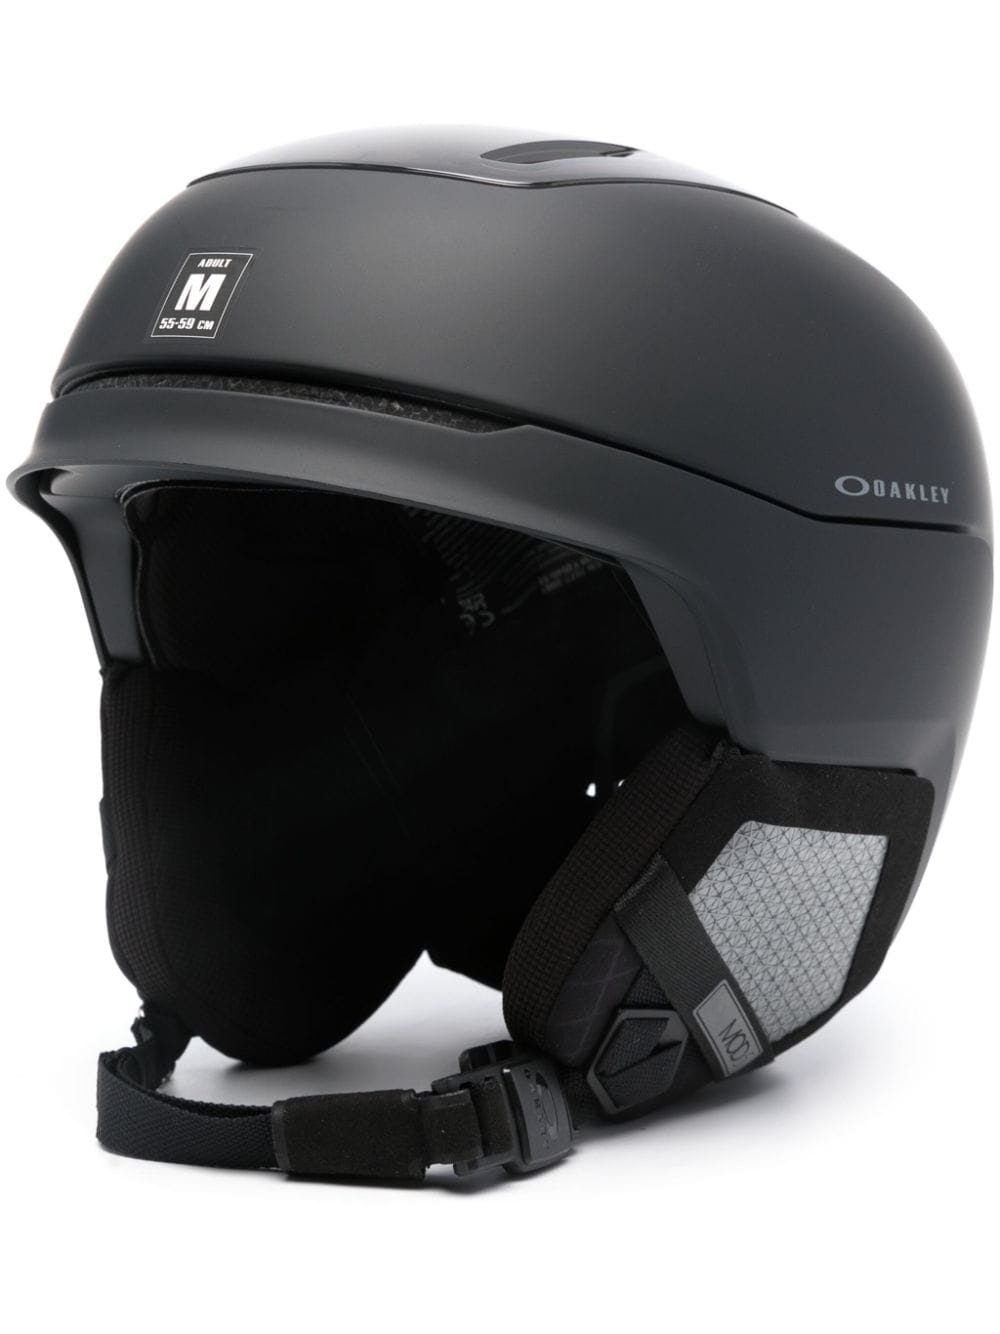 MOD5 ski helmet<BR/><BR/><BR/>